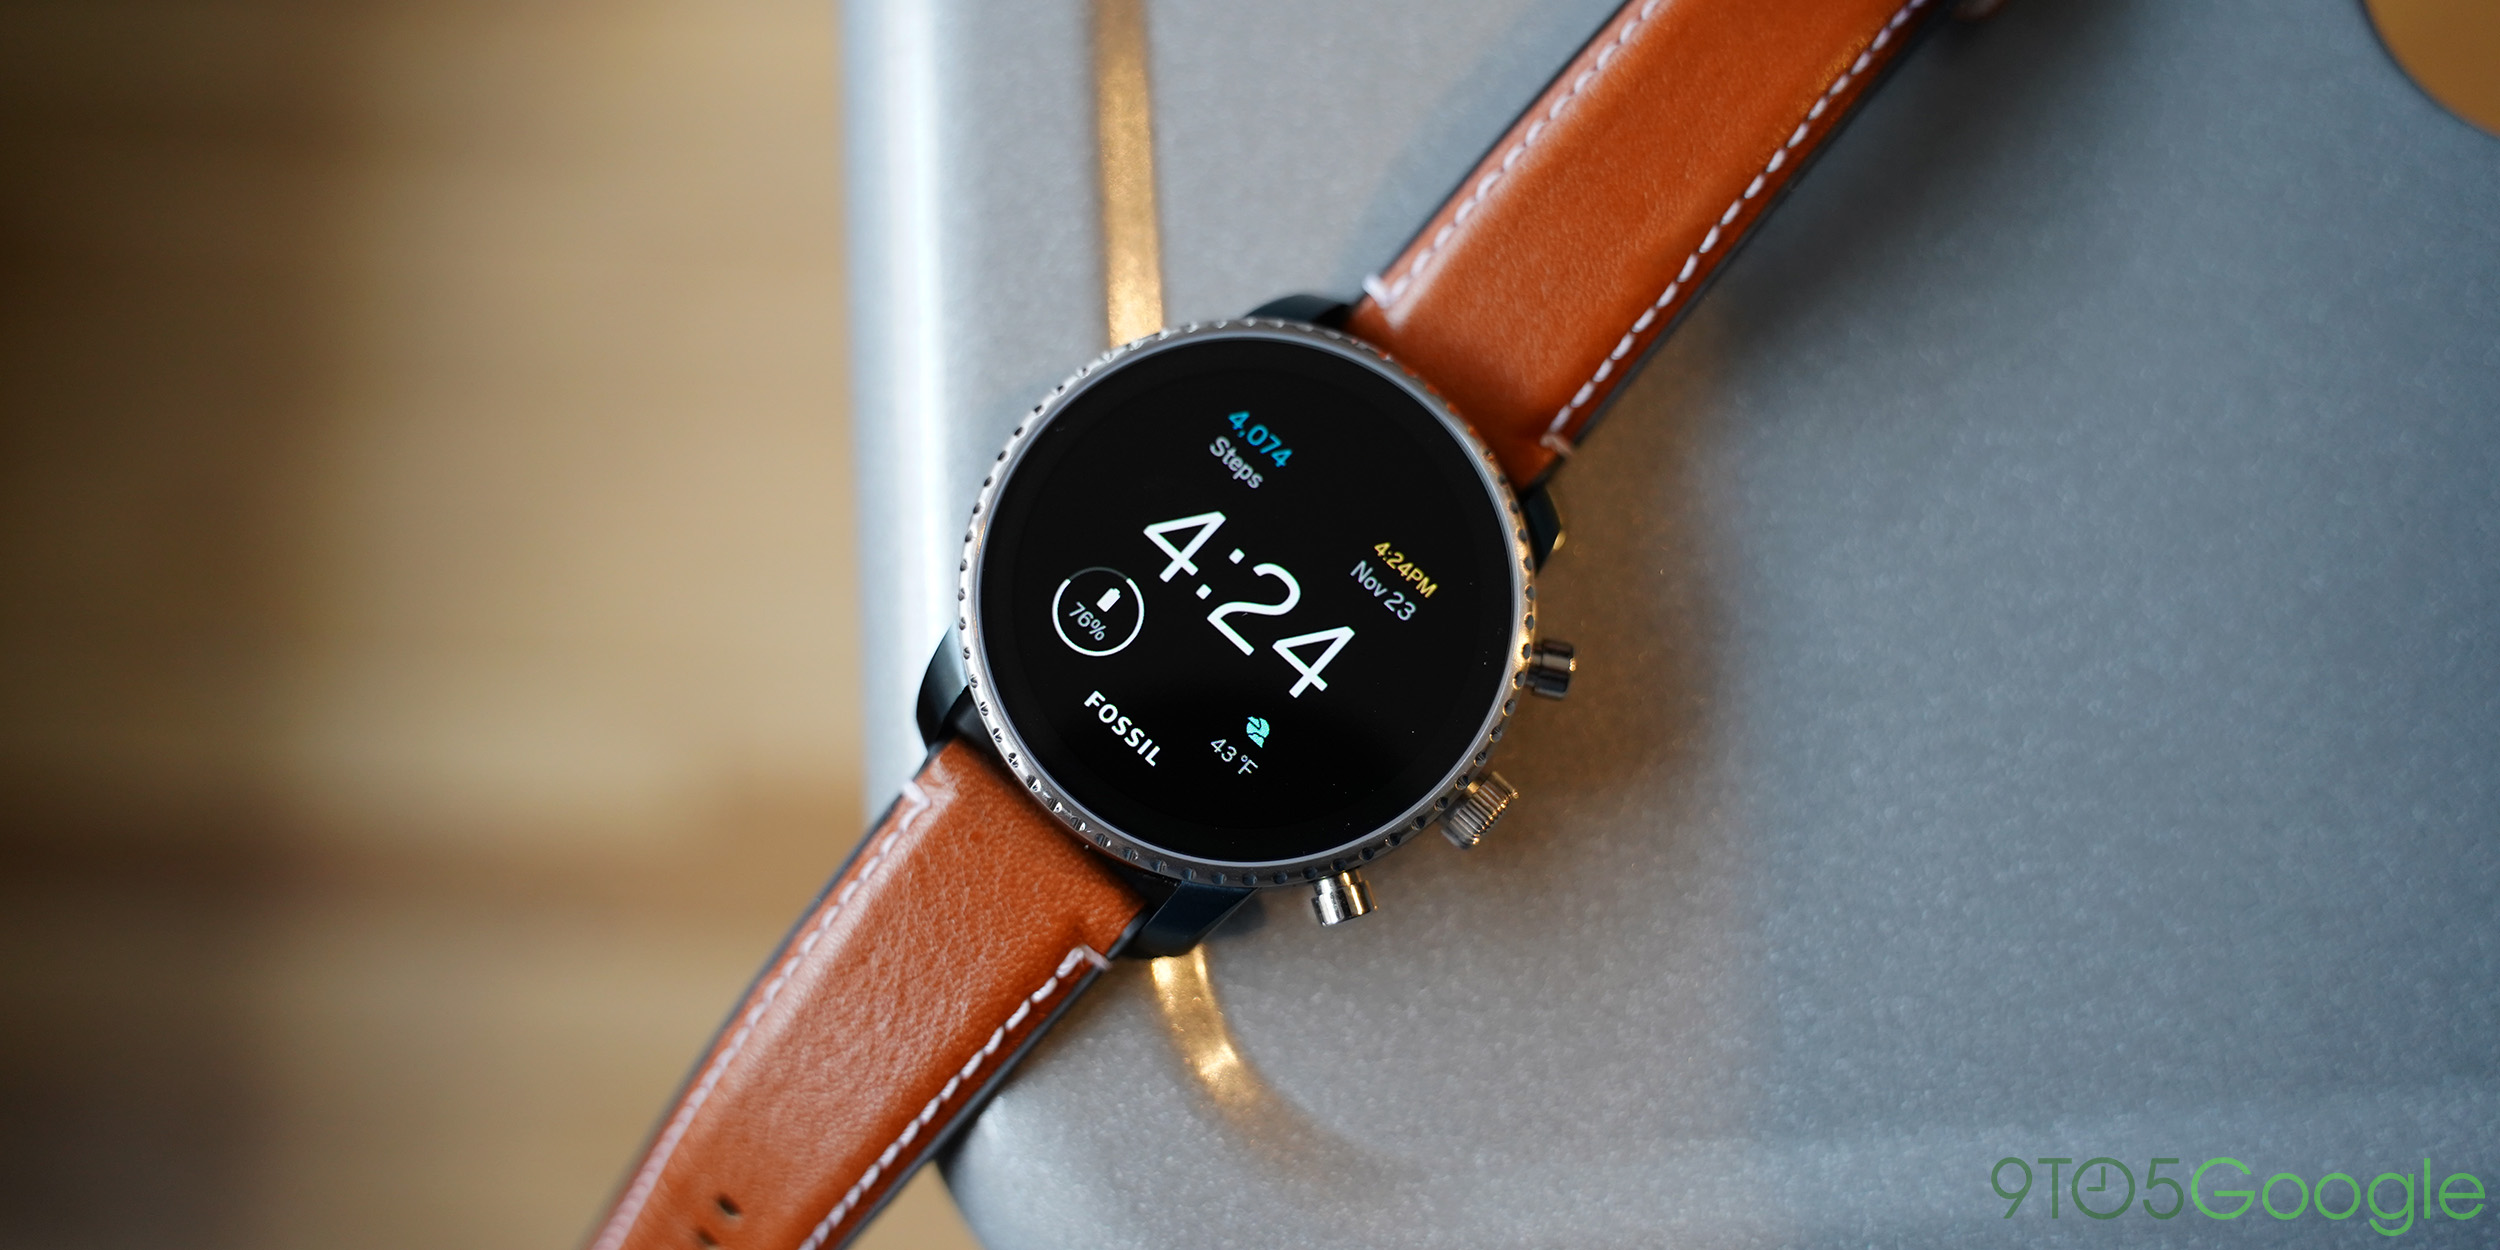 google pixel 3 xl compatible smartwatch